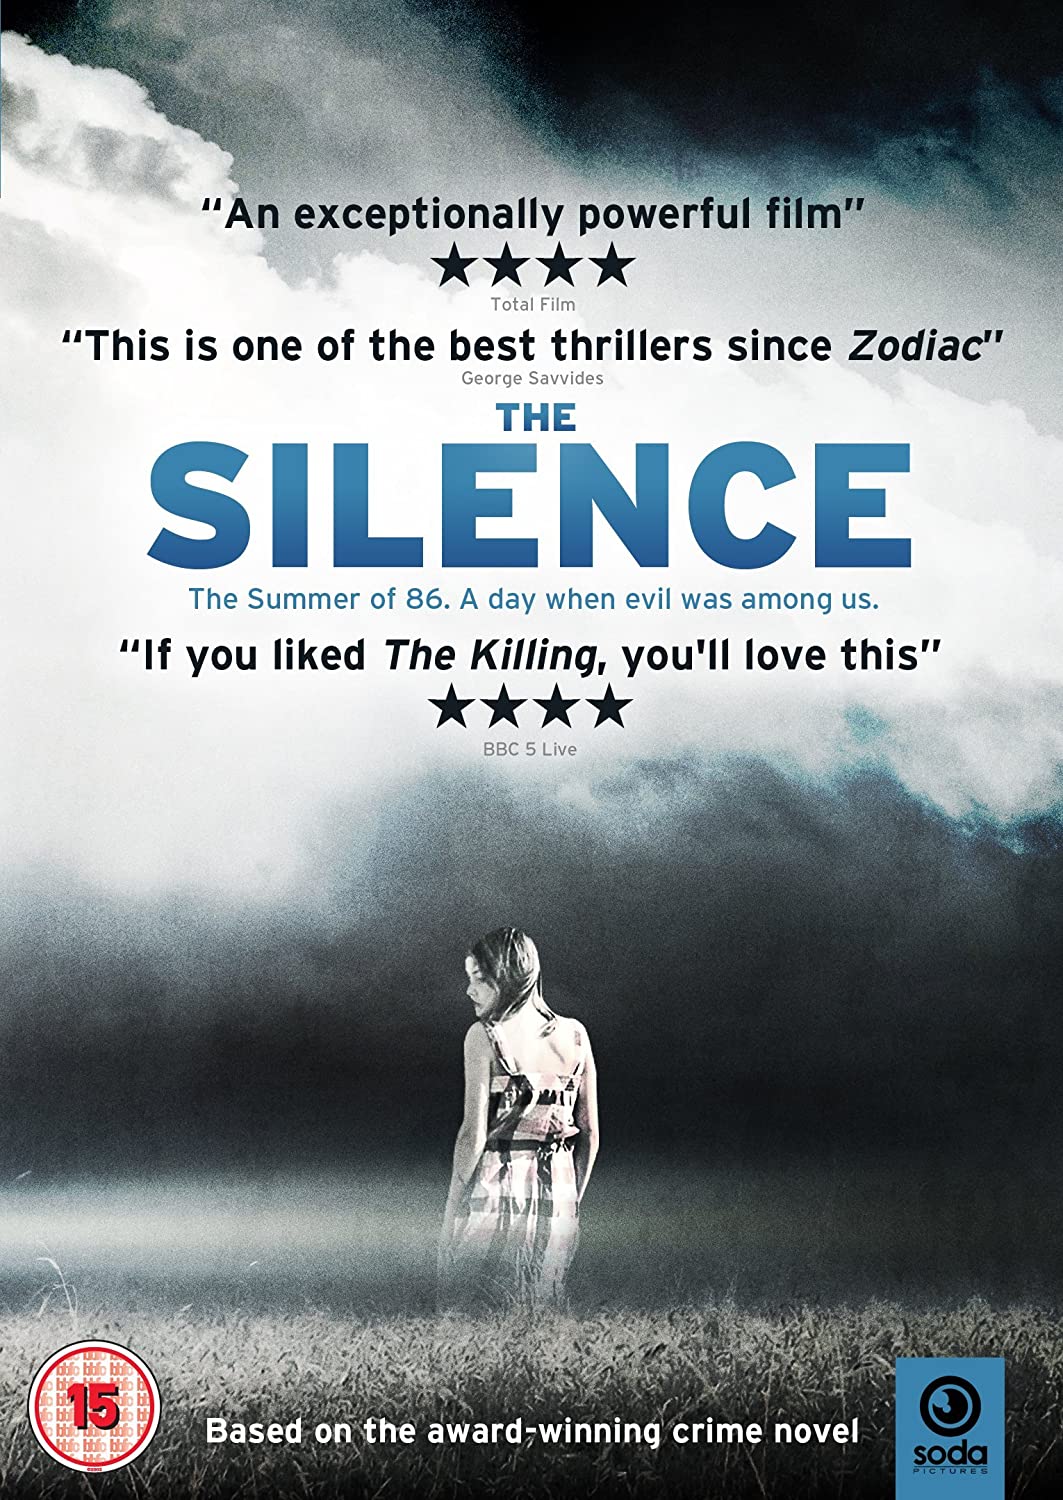 The Silence - Horror/Thriller [DVD]